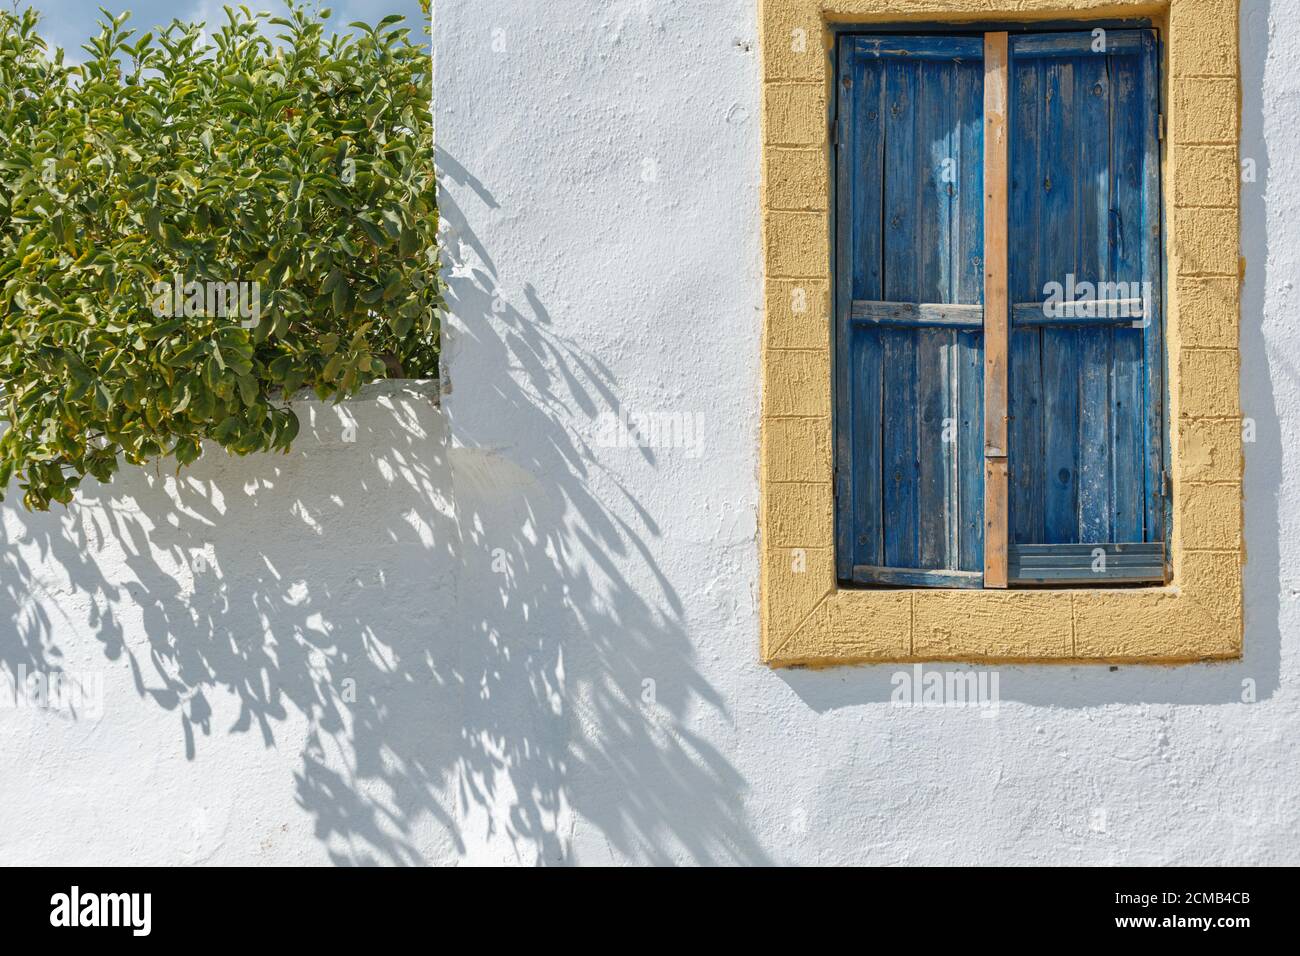 La fenêtre d'une maison grecque sur un mur blanc Avec bordure jaune et volets en bois bleu sur un Soleil jour Banque D'Images